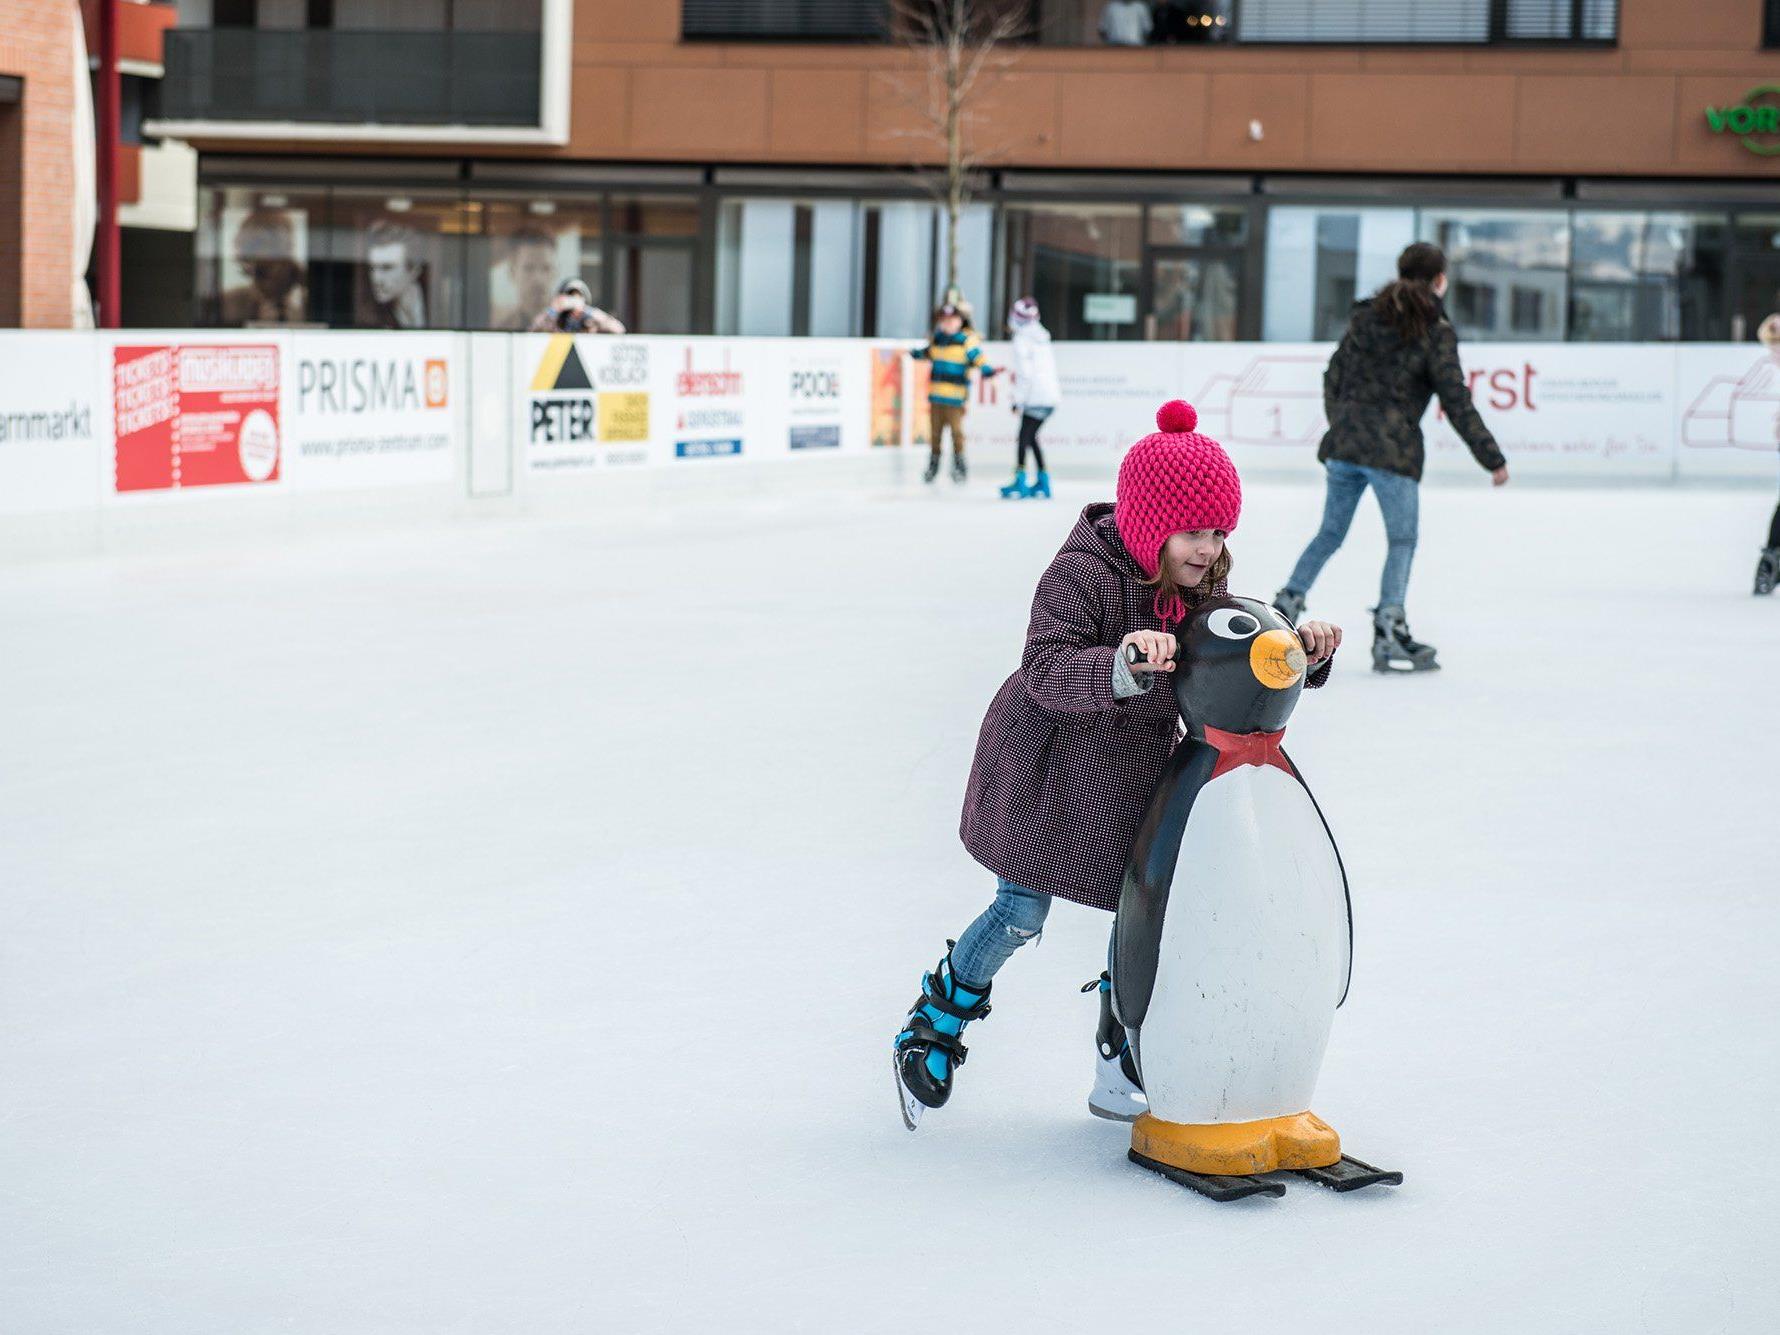 Am Freitag, 20. Jänner wird der Eislaufplatz in der Mitte Am Garnmarkt eröffnet